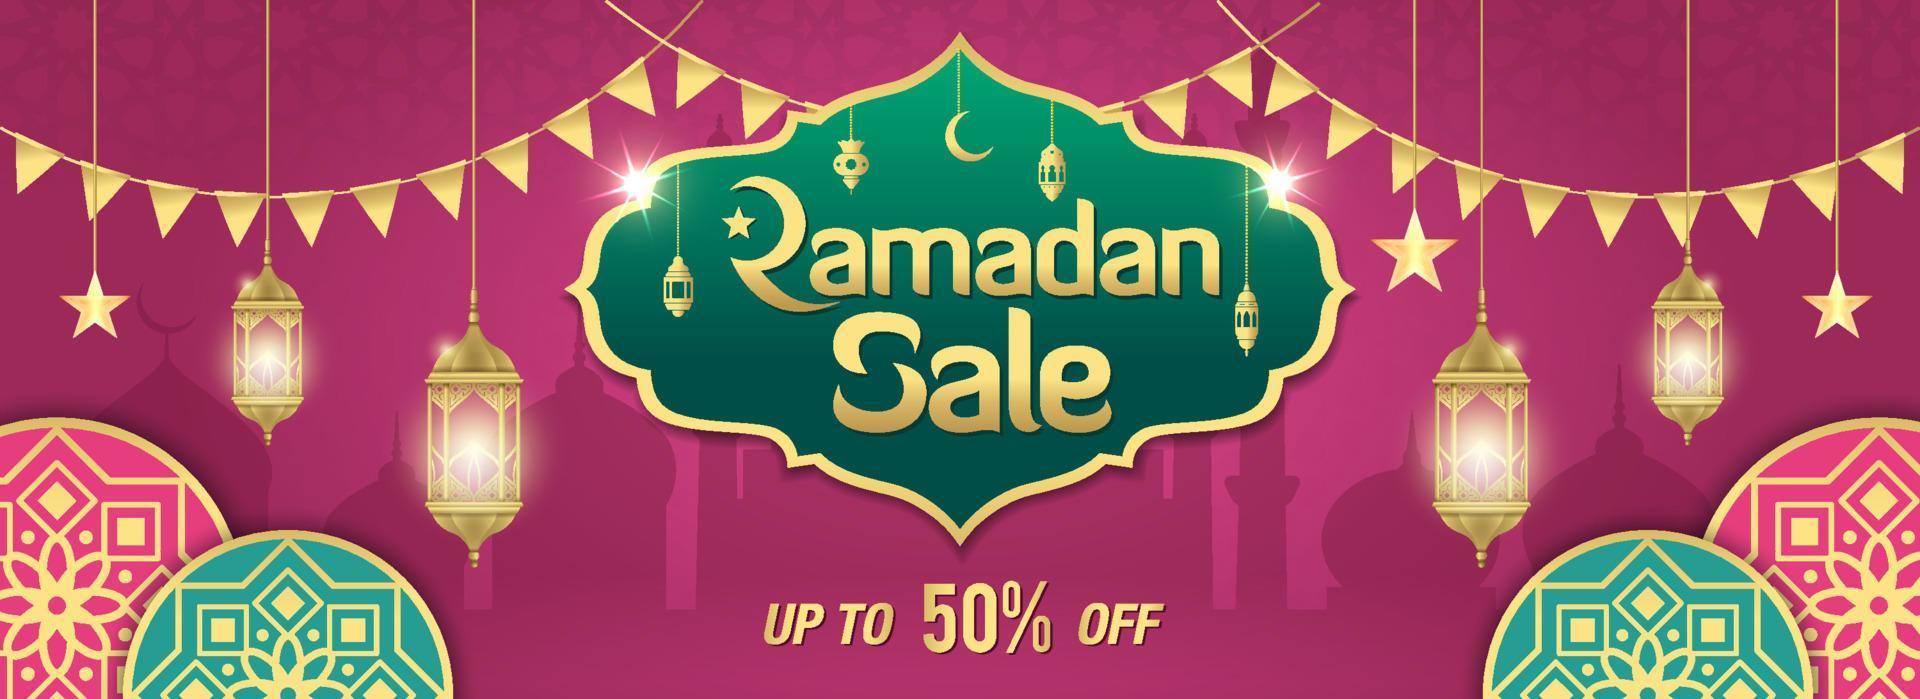 ramadan-uitverkoop, webkoptekst of bannerontwerp met gouden glanzend frame, Arabische lantaarns en islamitisch ornament vector